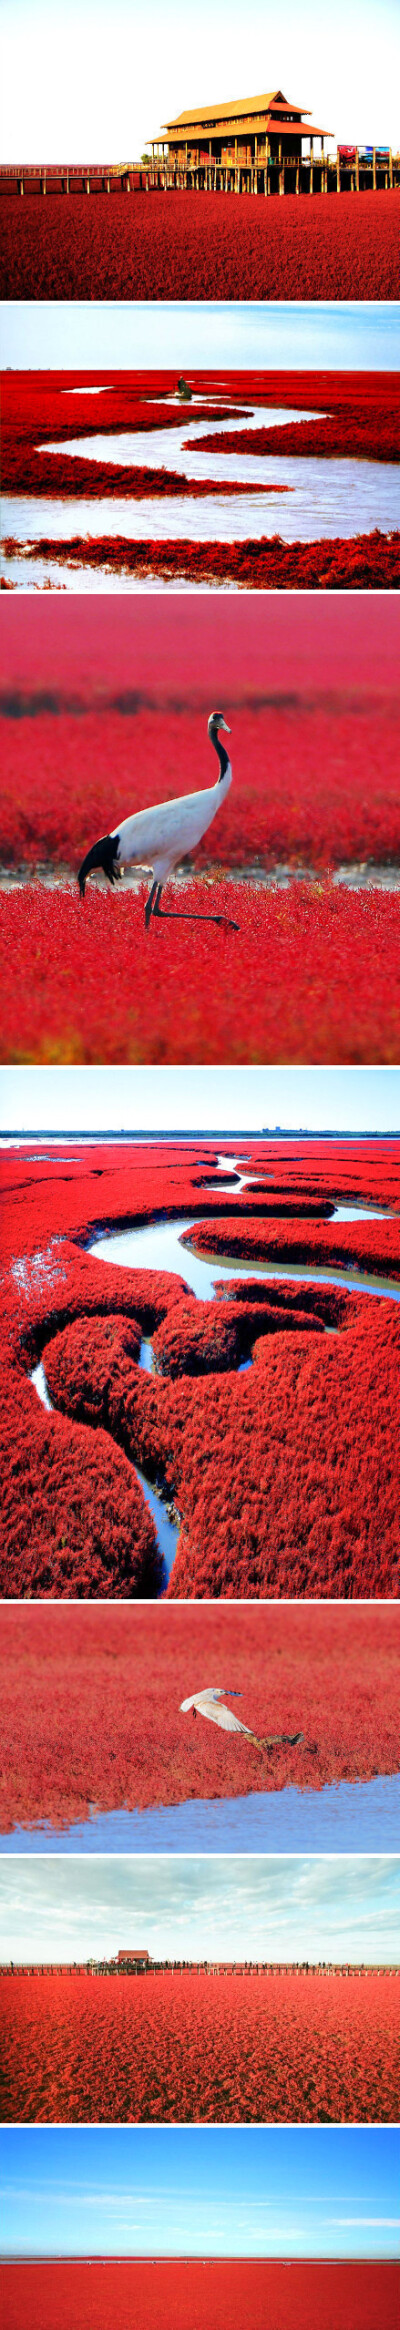 而是离北京500多公里的辽宁盘锦,现在长得正好的世界奇观"红海滩"!